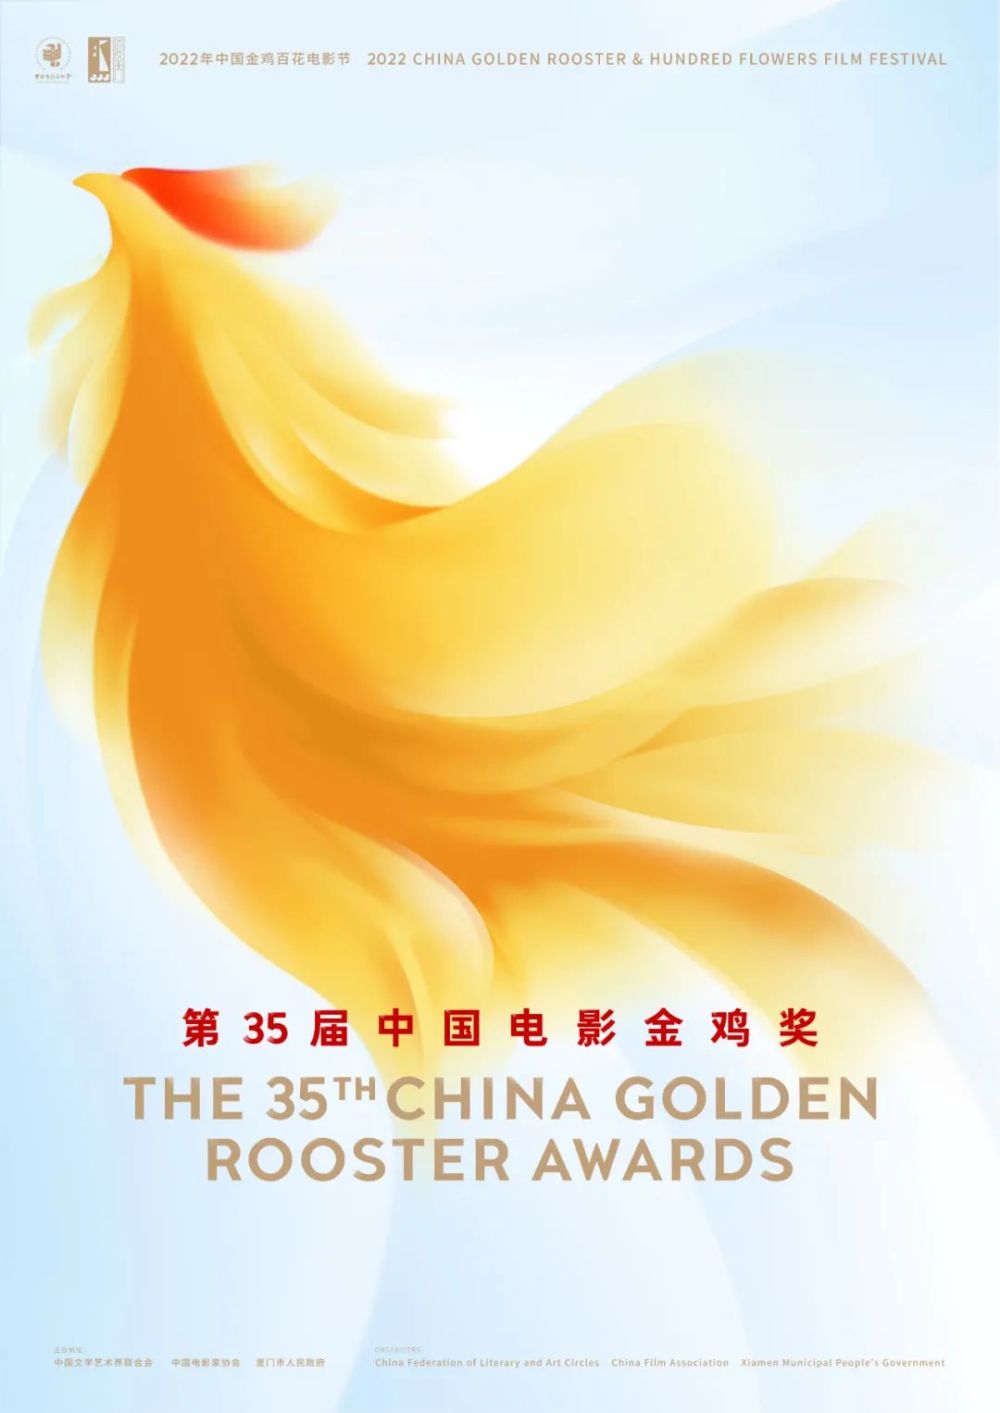 [组图]2022年中国金鸡百花电影节11月10日至12日在厦门举办 第 1 张